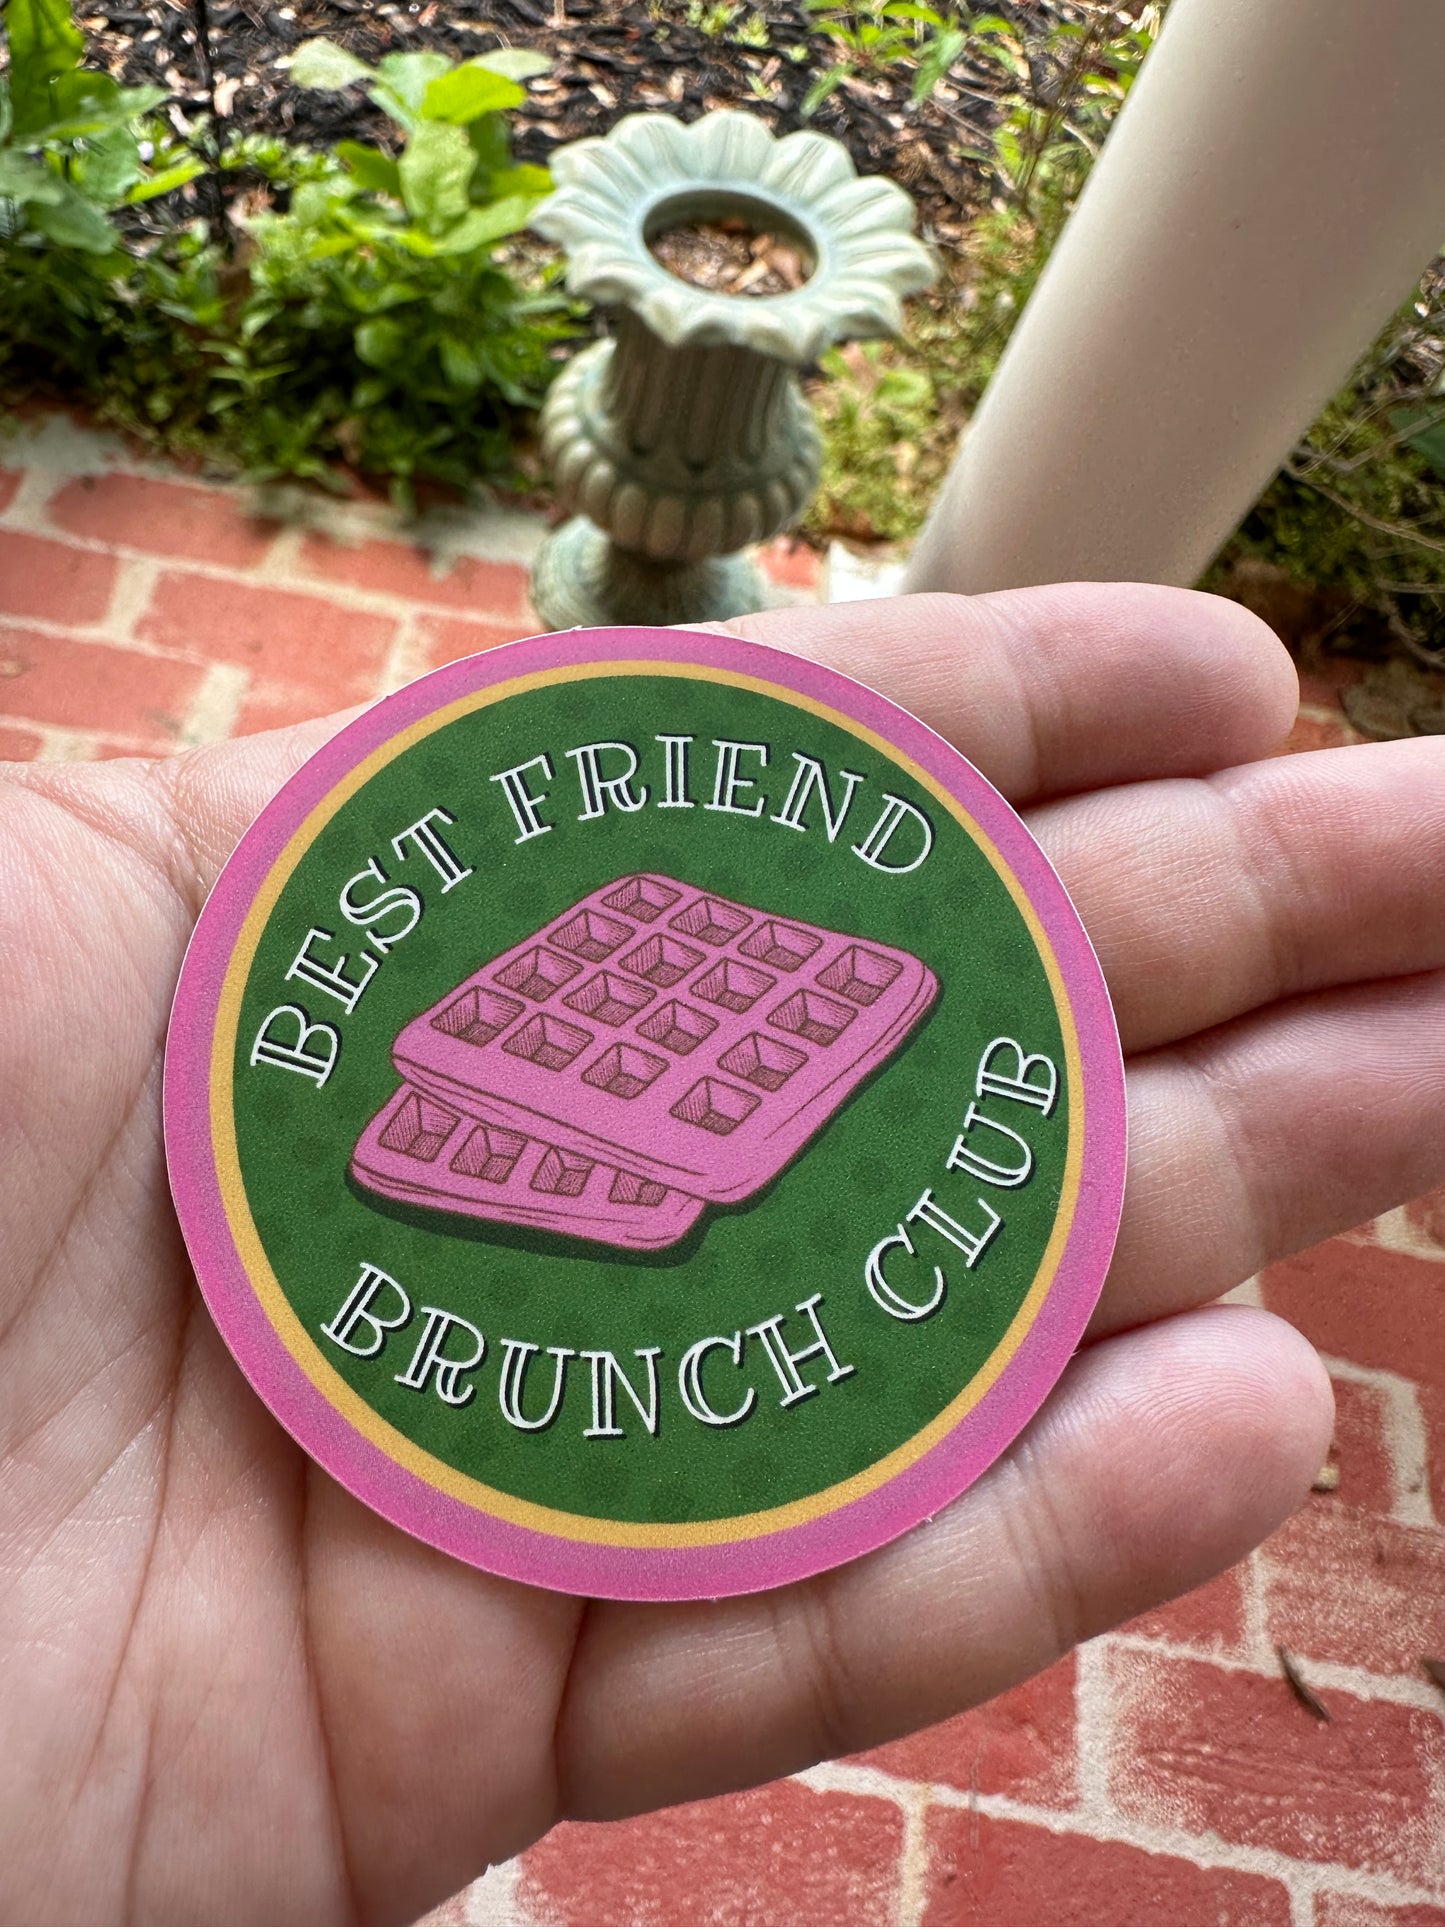 Best Friend Brunch Club Matte Vinyl Sticker